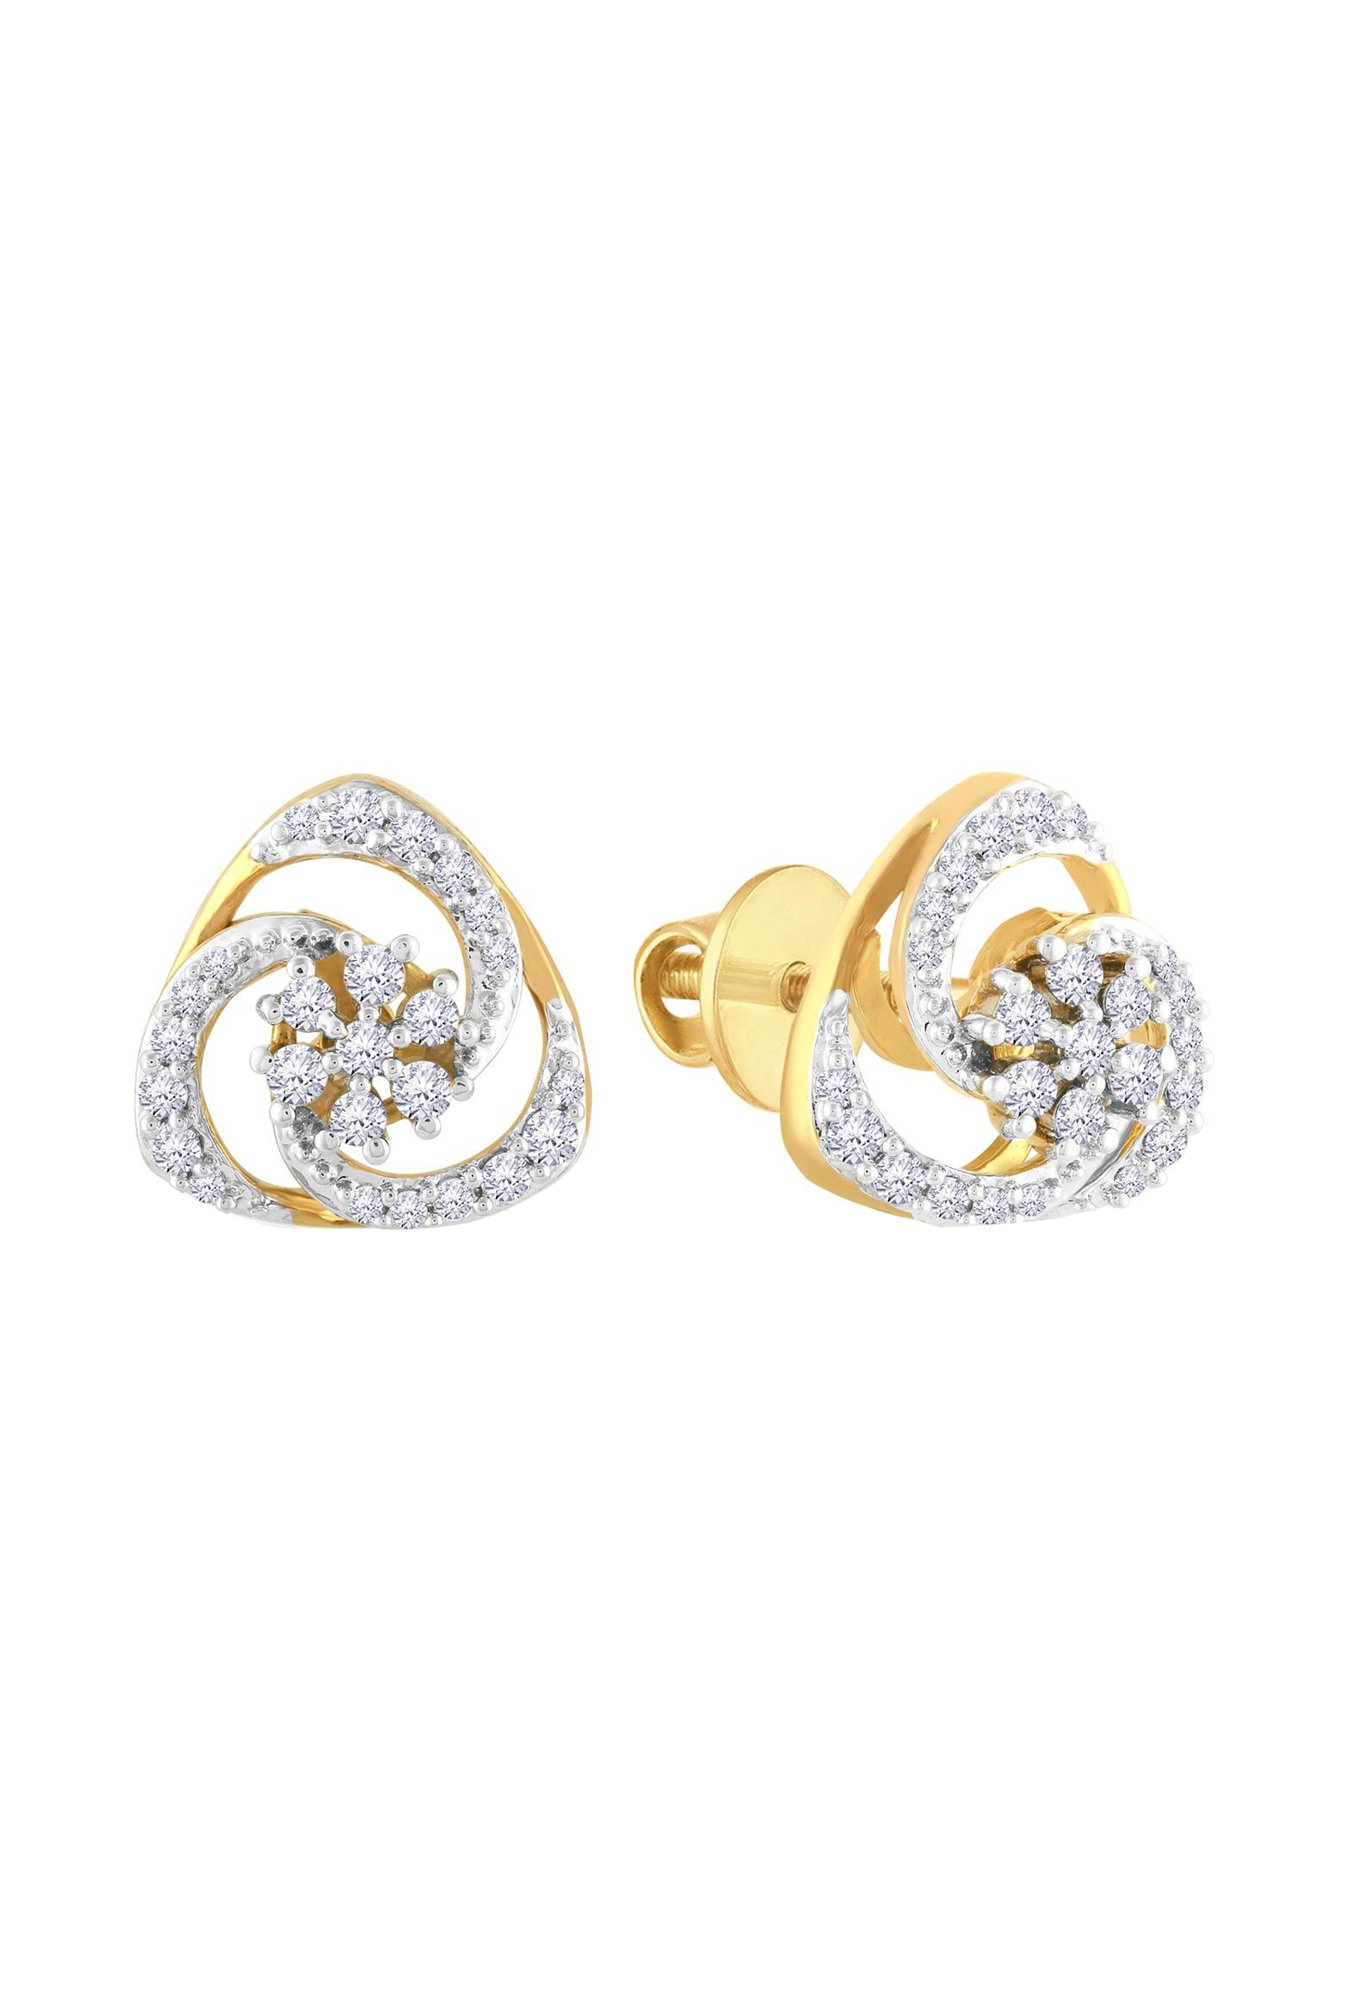 Malabar Gold Earring ANDAAAAAAZOF | Gold earrings designs, Gold bangles  design, Gold earrings